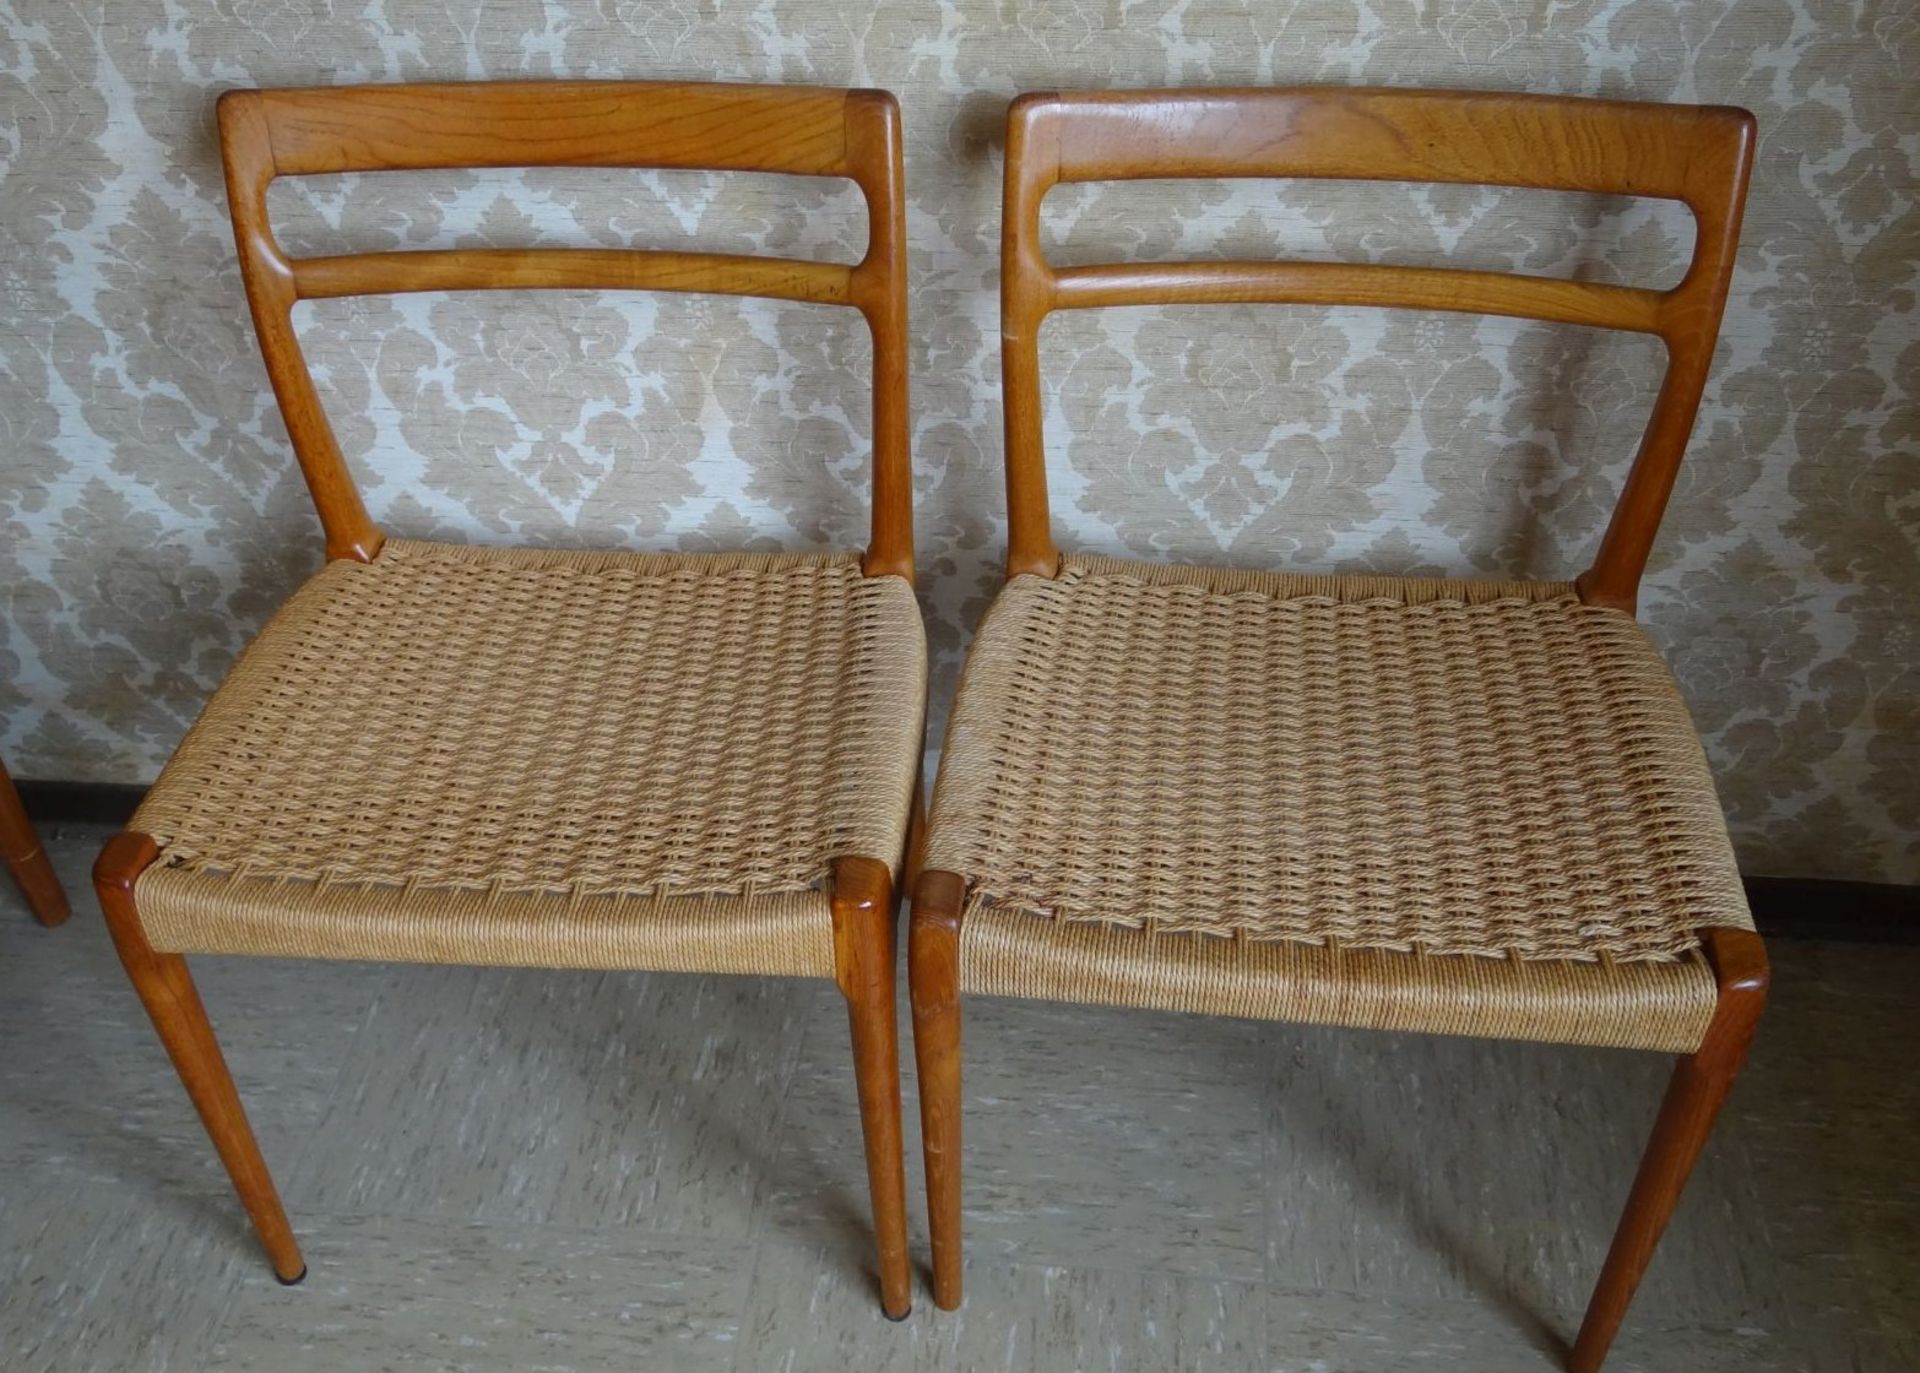 4x dänische Design-Stühle mit Korbgeflecht, H-78 cm, B-50 cm, Sitzhöhe 45 cm, Gebrauchsspu - Bild 2 aus 3